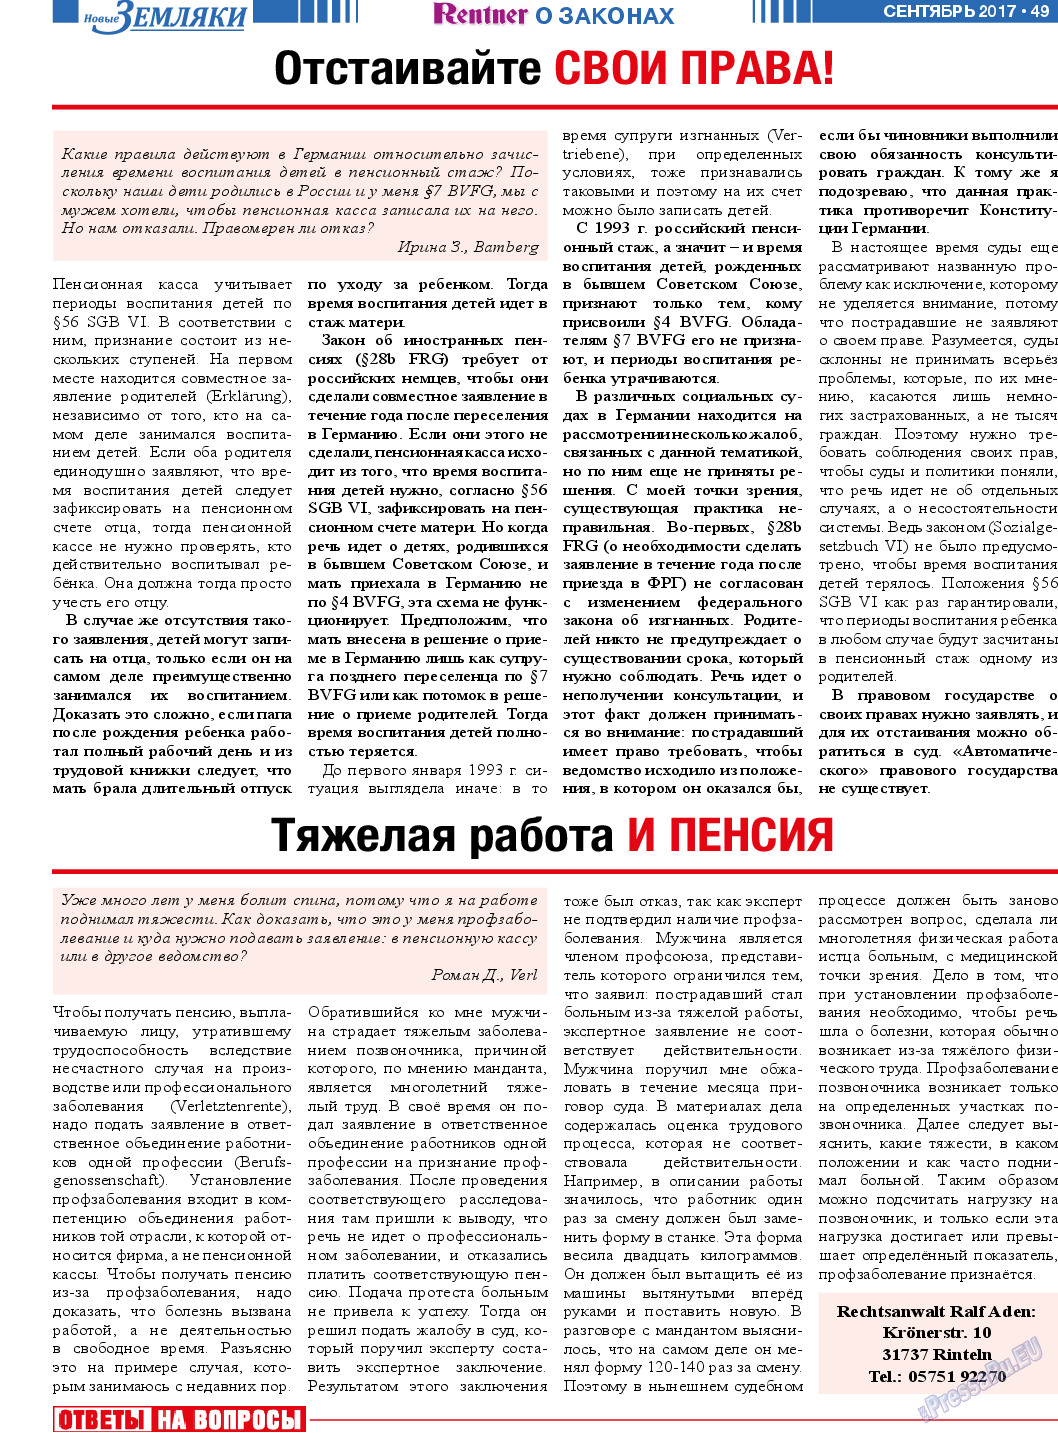 Новые Земляки, газета. 2017 №9 стр.49